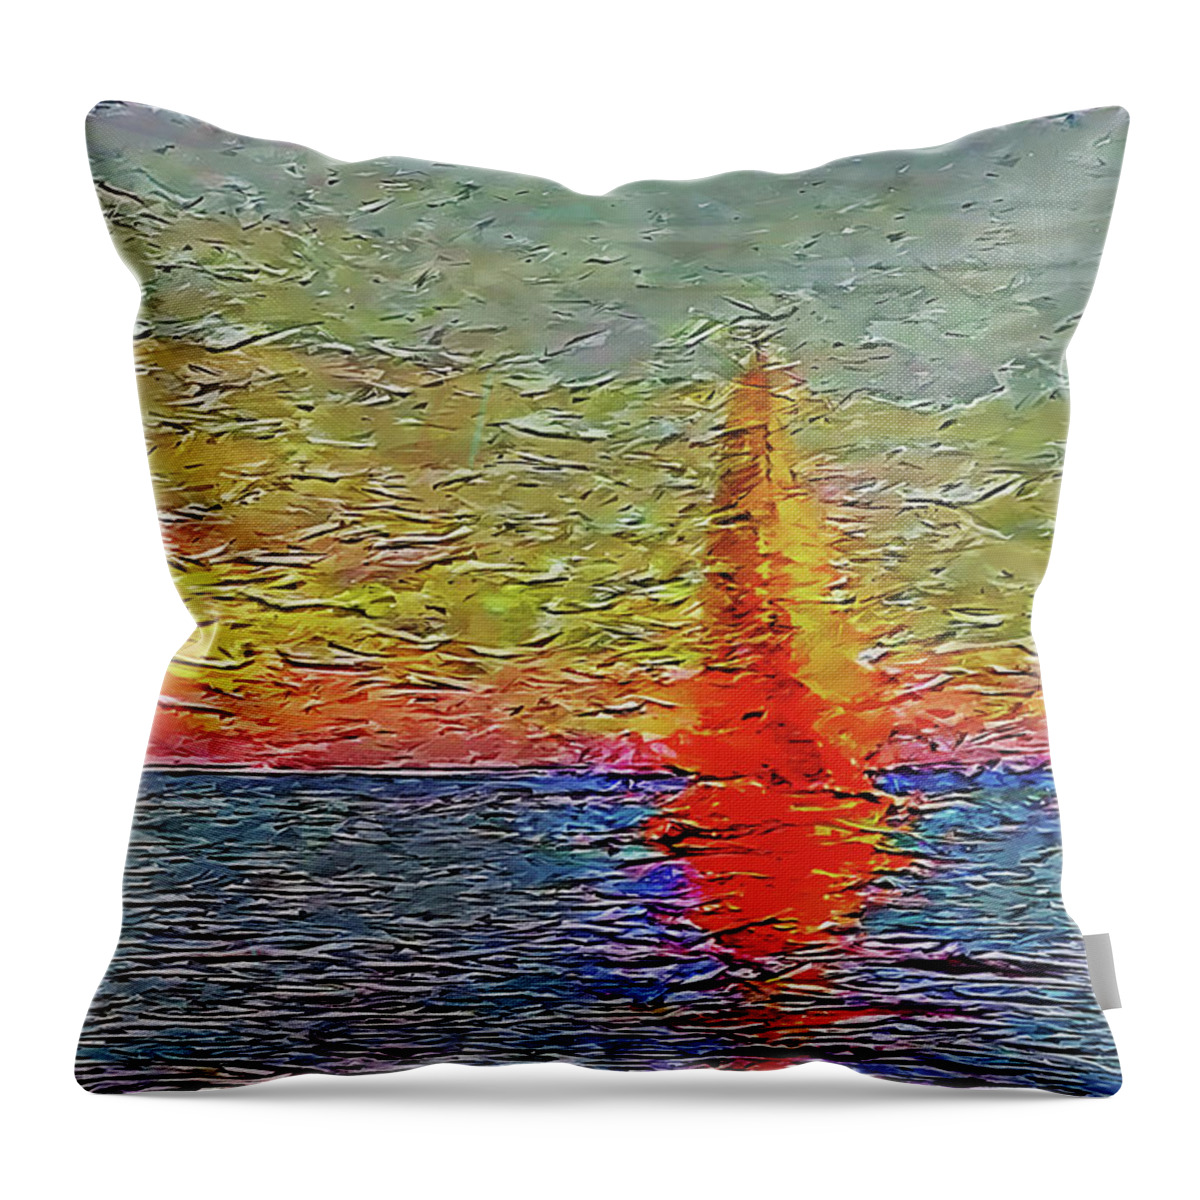 Sunset Throw Pillow featuring the digital art Fiery Kiss by Alex Mir